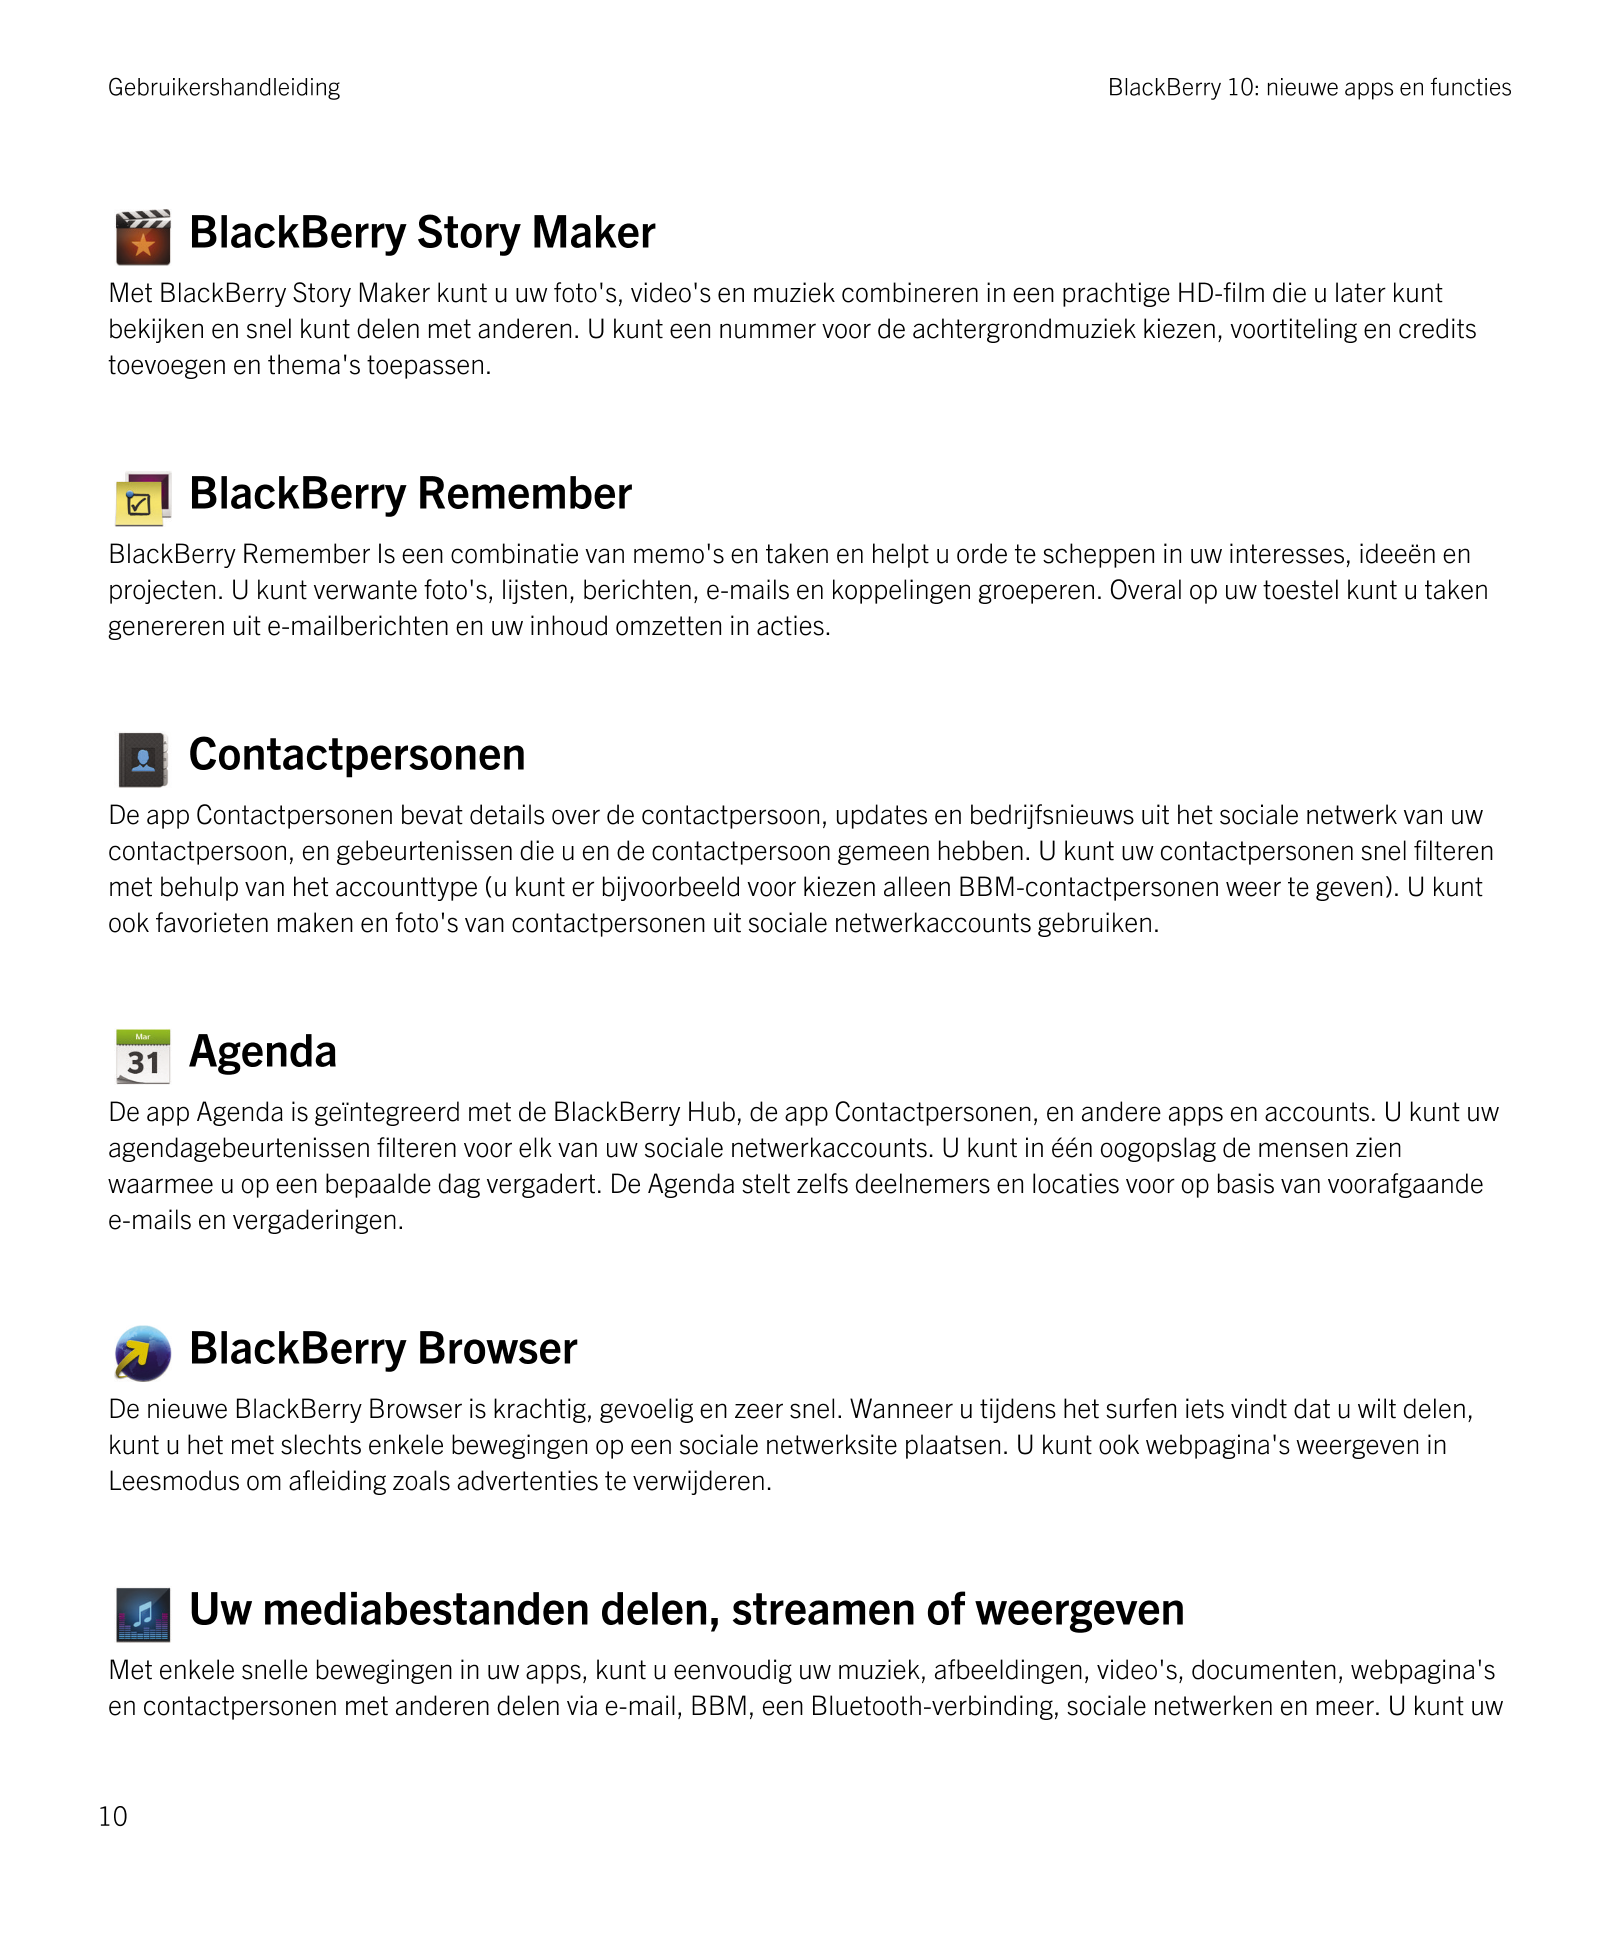 Gebruikershandleiding BlackBerry 10: nieuwe apps en functies
BlackBerry Story Maker 
Met  BlackBerry Story Maker kunt u uw foto'